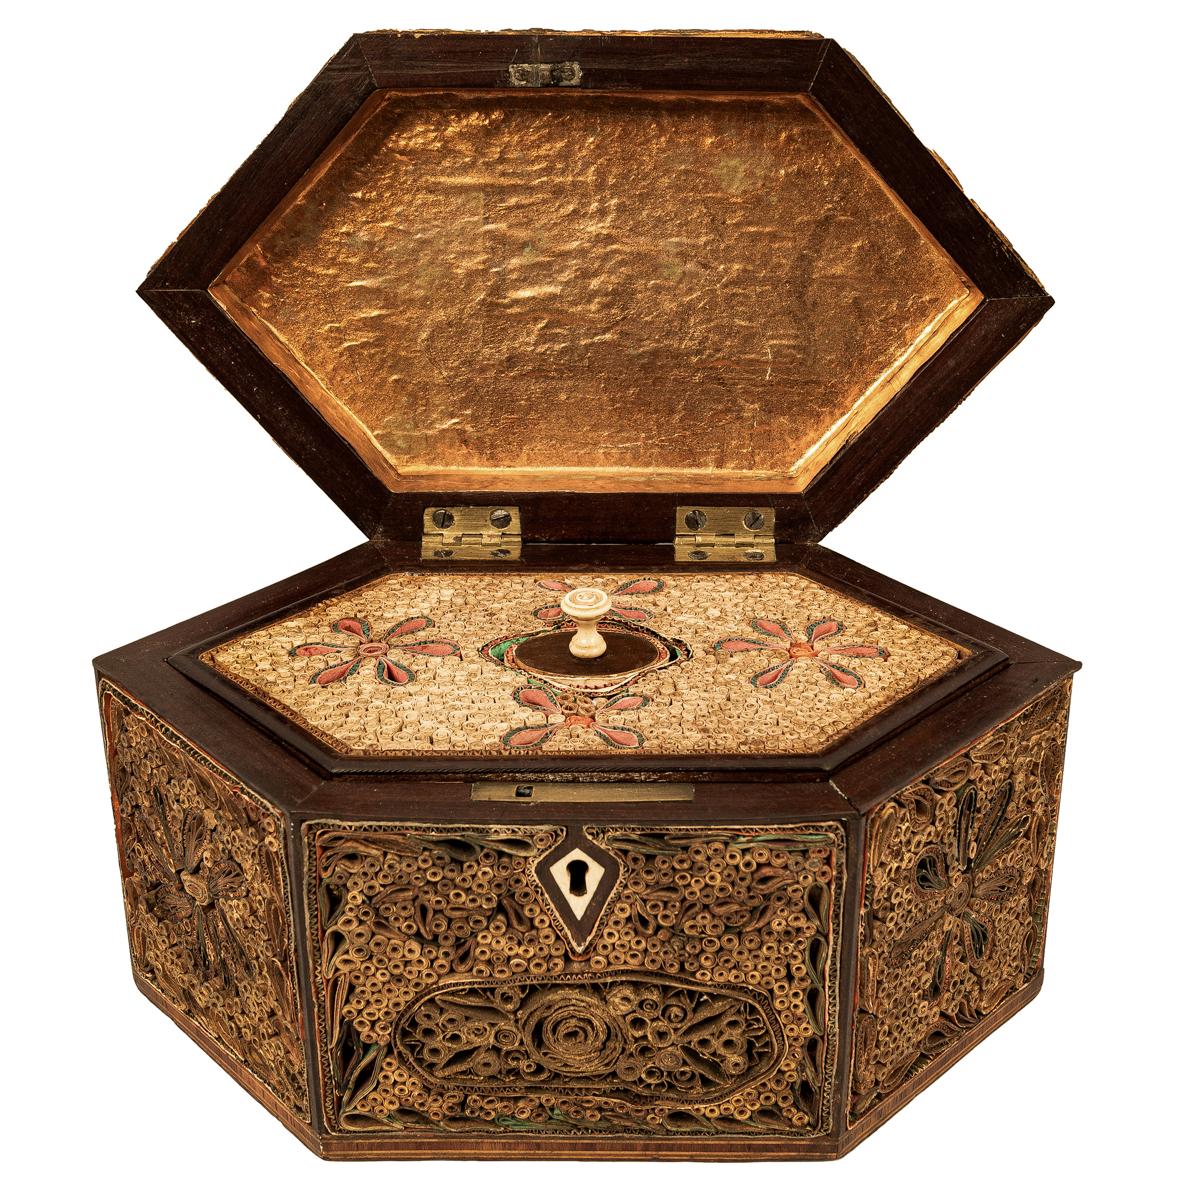 Une bonne boîte à thé ancienne géorgienne à décor de volutes, vers 1780.
Le caddy est de forme hexagonale, l'avant, l'arrière et le couvercle sont décorés de rinceaux de papier avec des motifs floraux et feuillus stylisés. Le caddy a un couvercle à